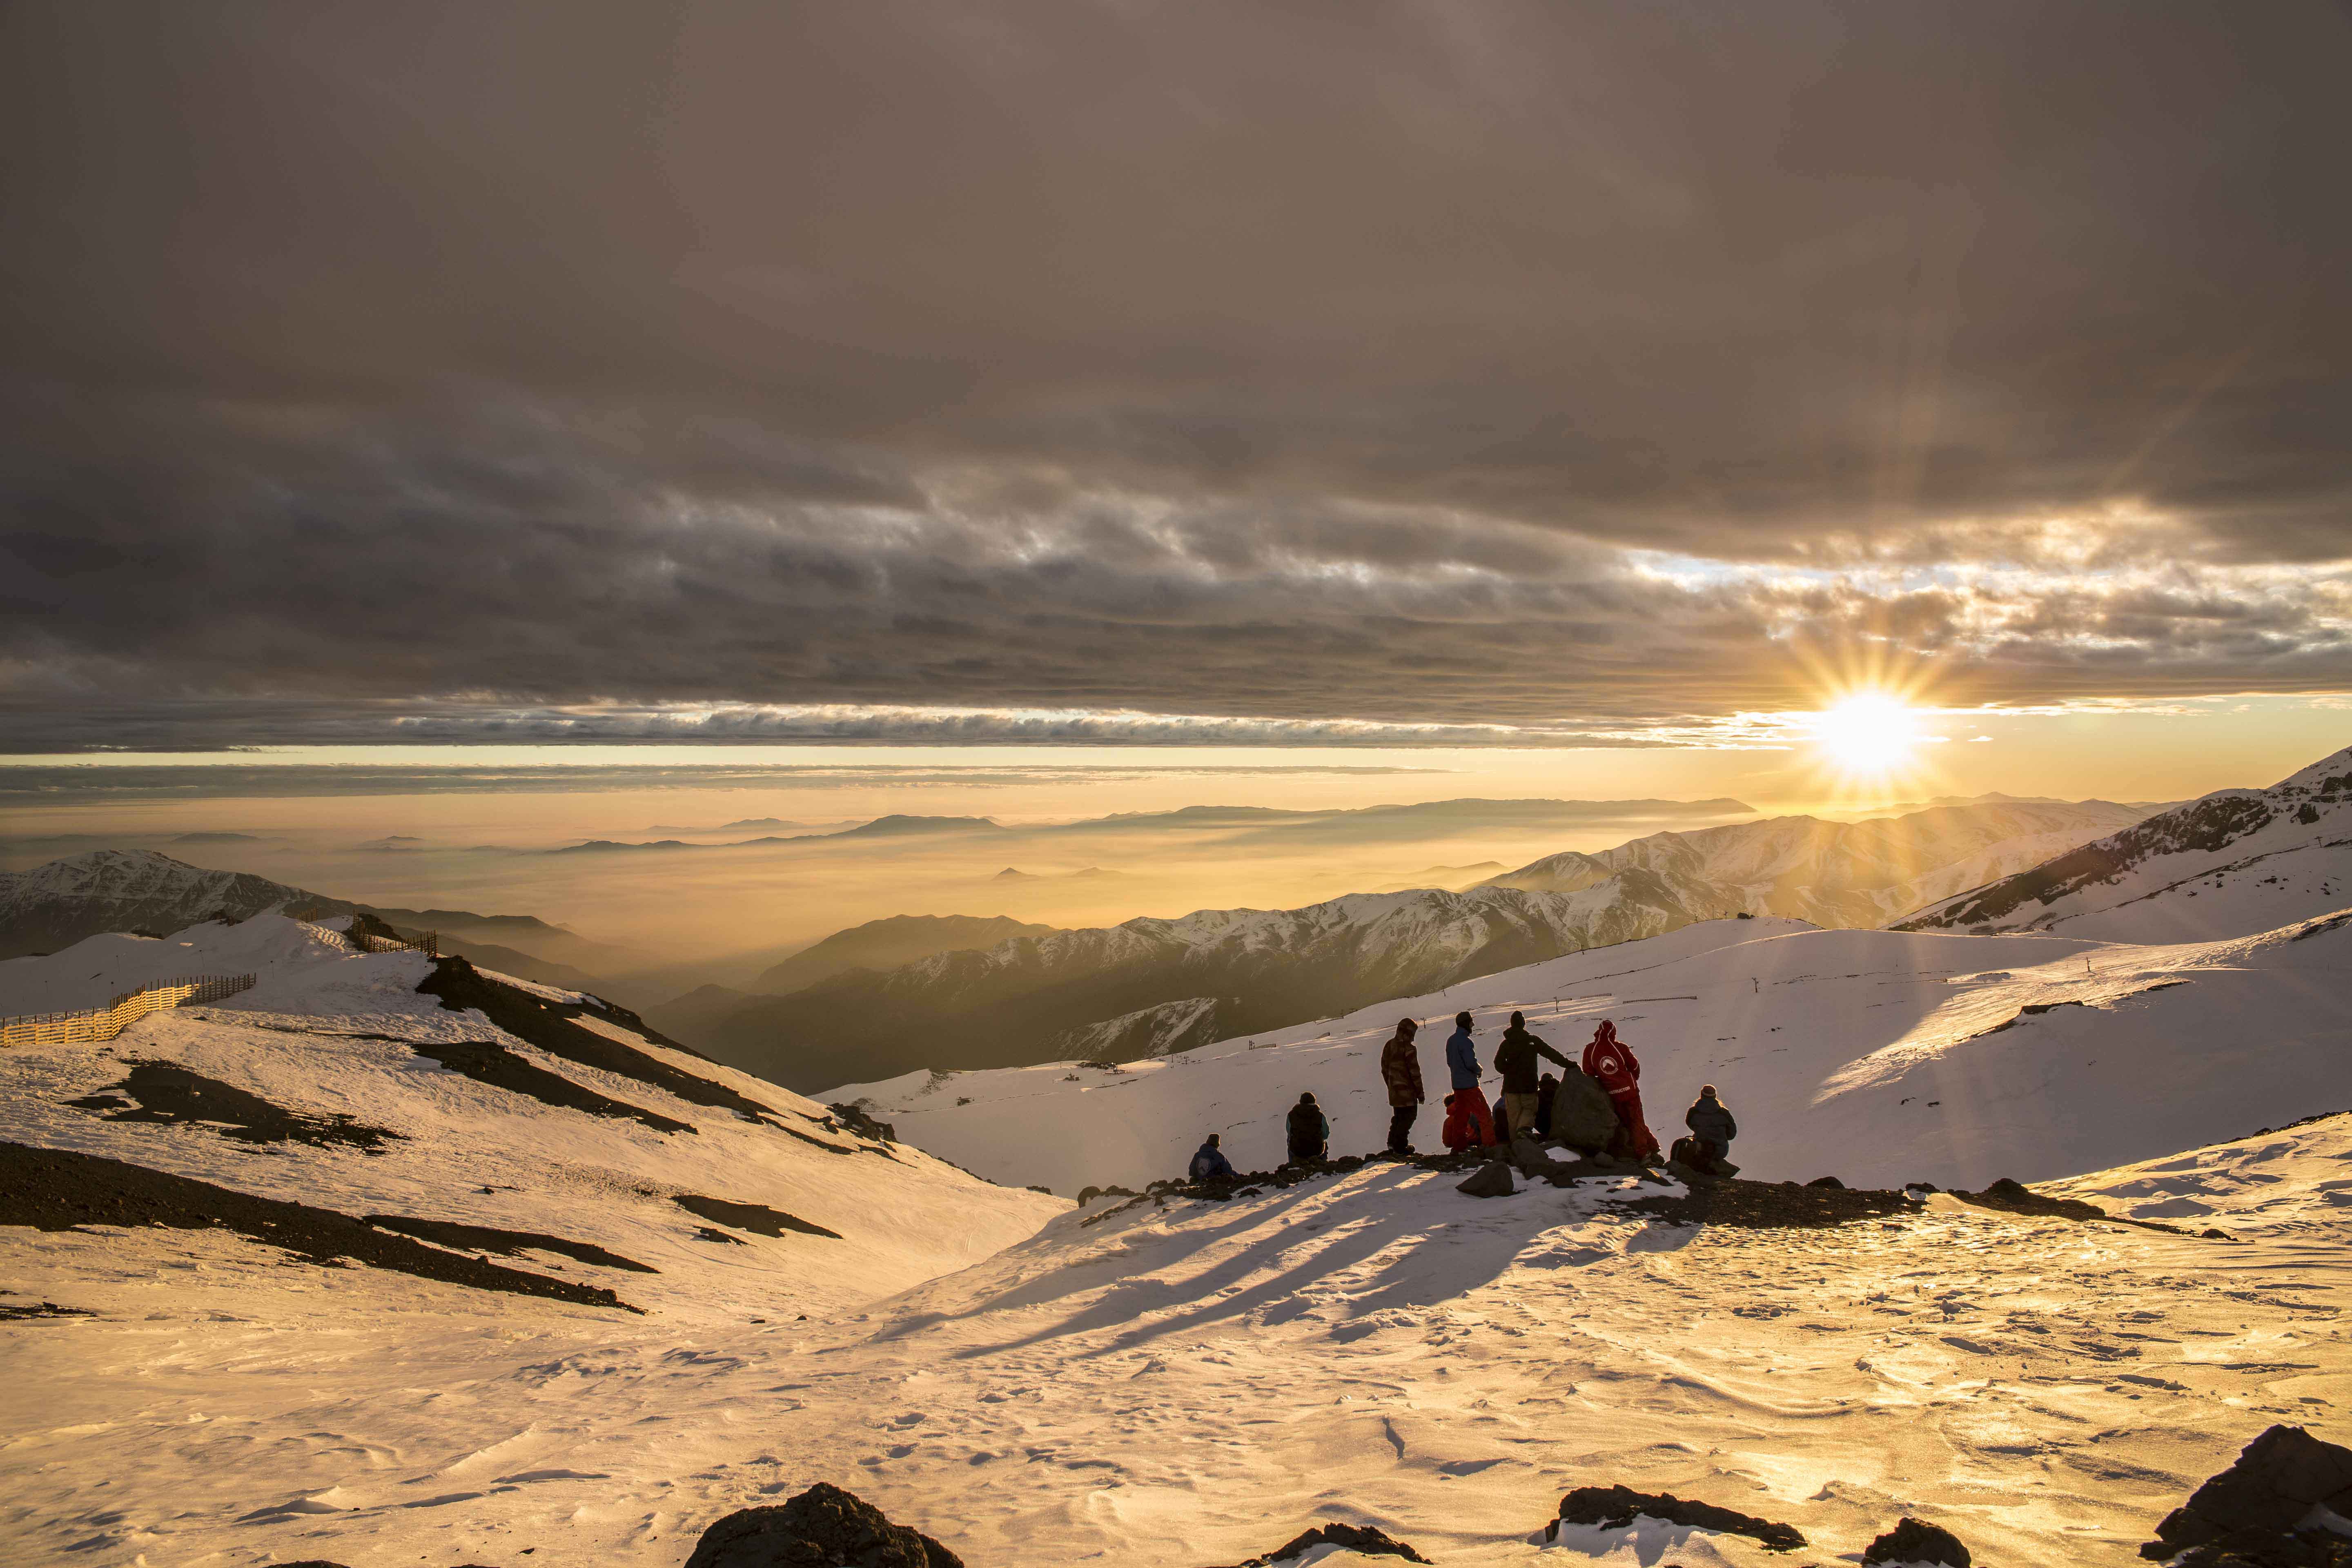 Uno de los placeres que tiene la montaña es disfrutar esa puesta de sol cada tarde junto a los amigos, Foto tomada en el Centro de ski El Colorado, Farellones.